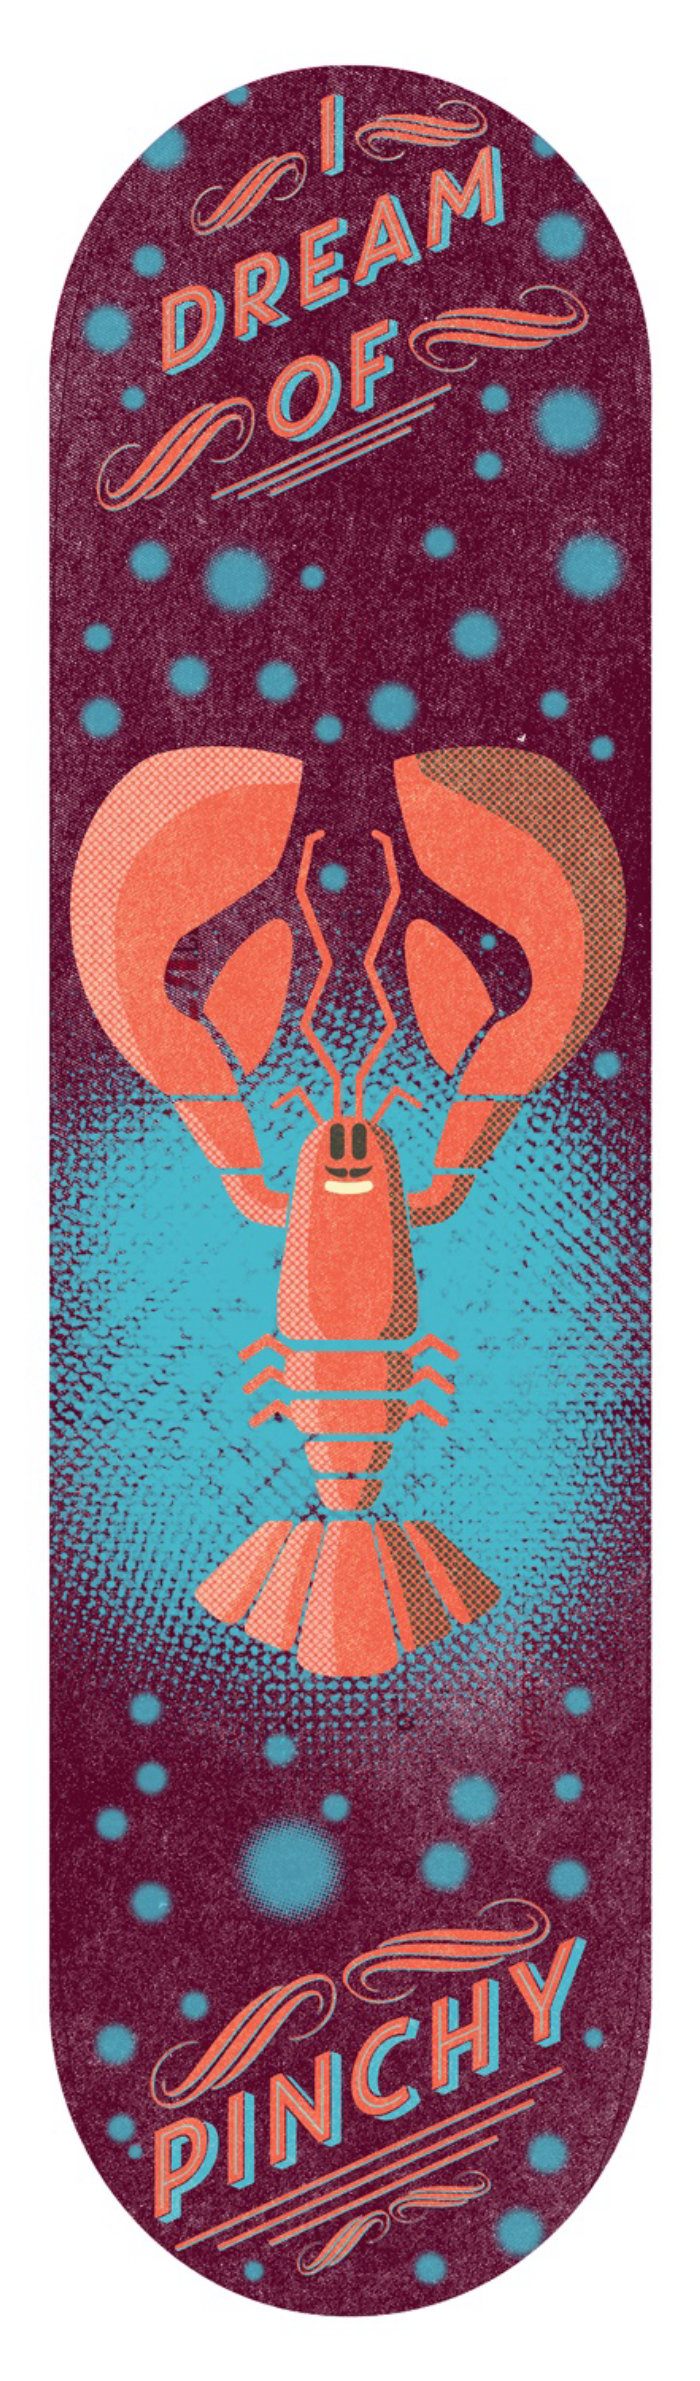 Graphic design of crab